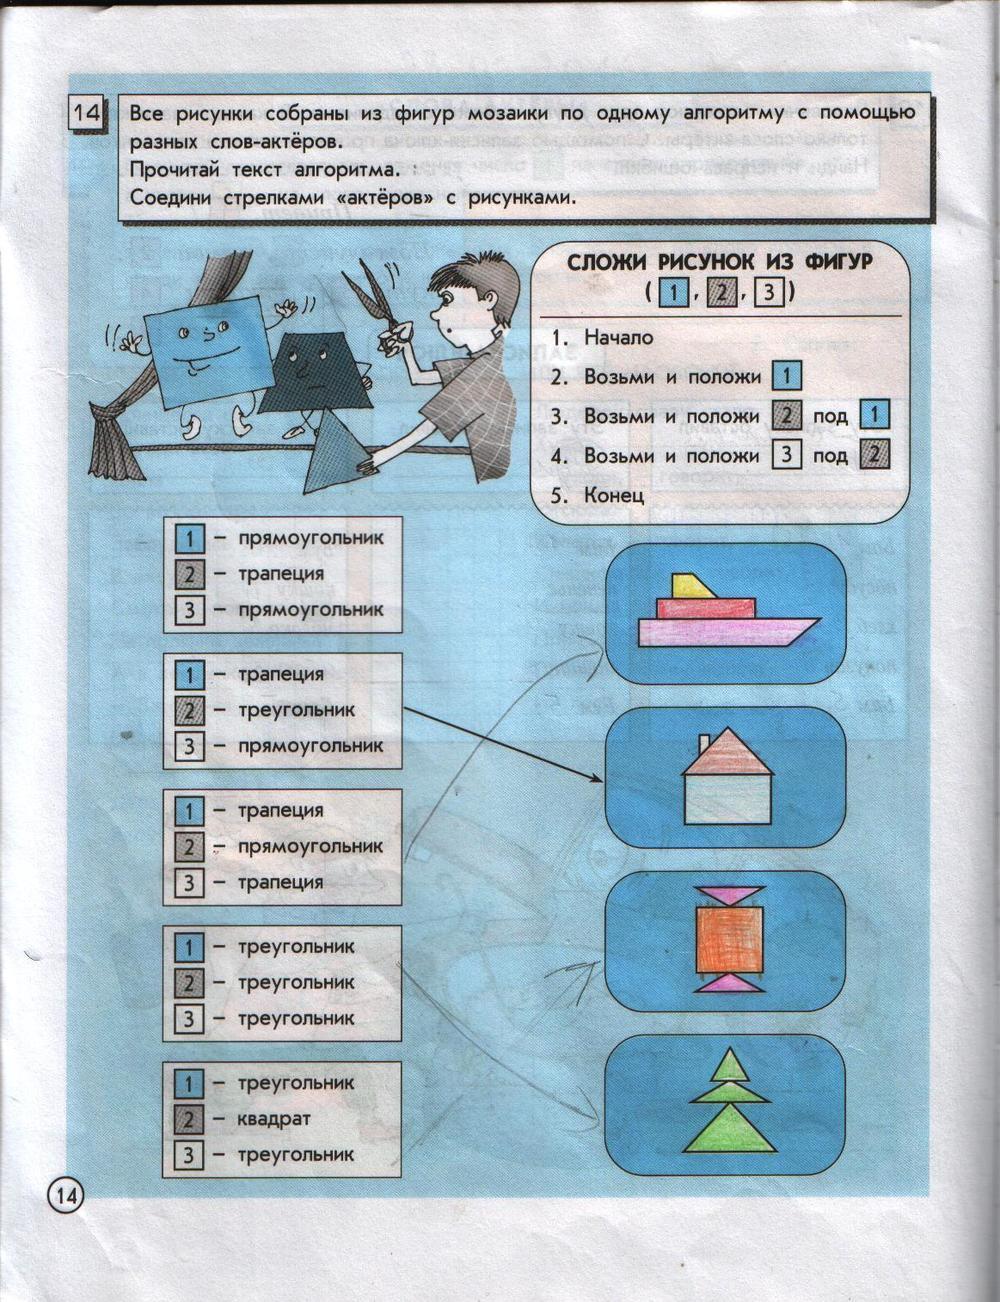 ГДЗ Информатика 4 класс часть 1 страница 14 Горячев, Горина